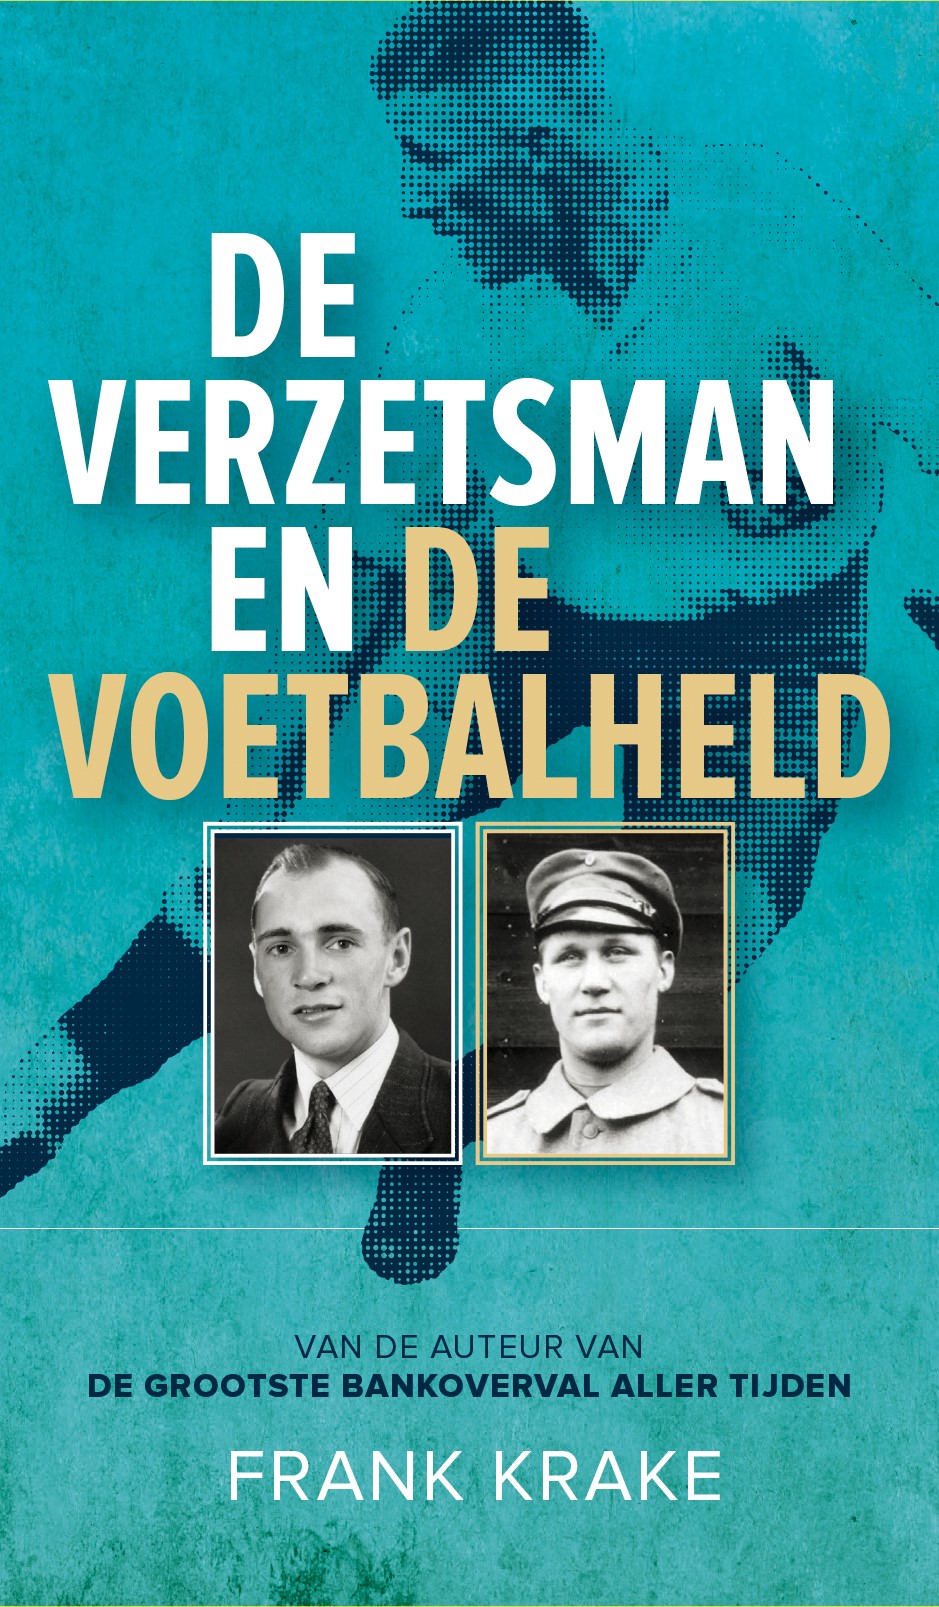 Boeklancering 'De verzetsman en de voetbalheld' van Frank Krake op 30 maart bij Broekhuis Hengelo